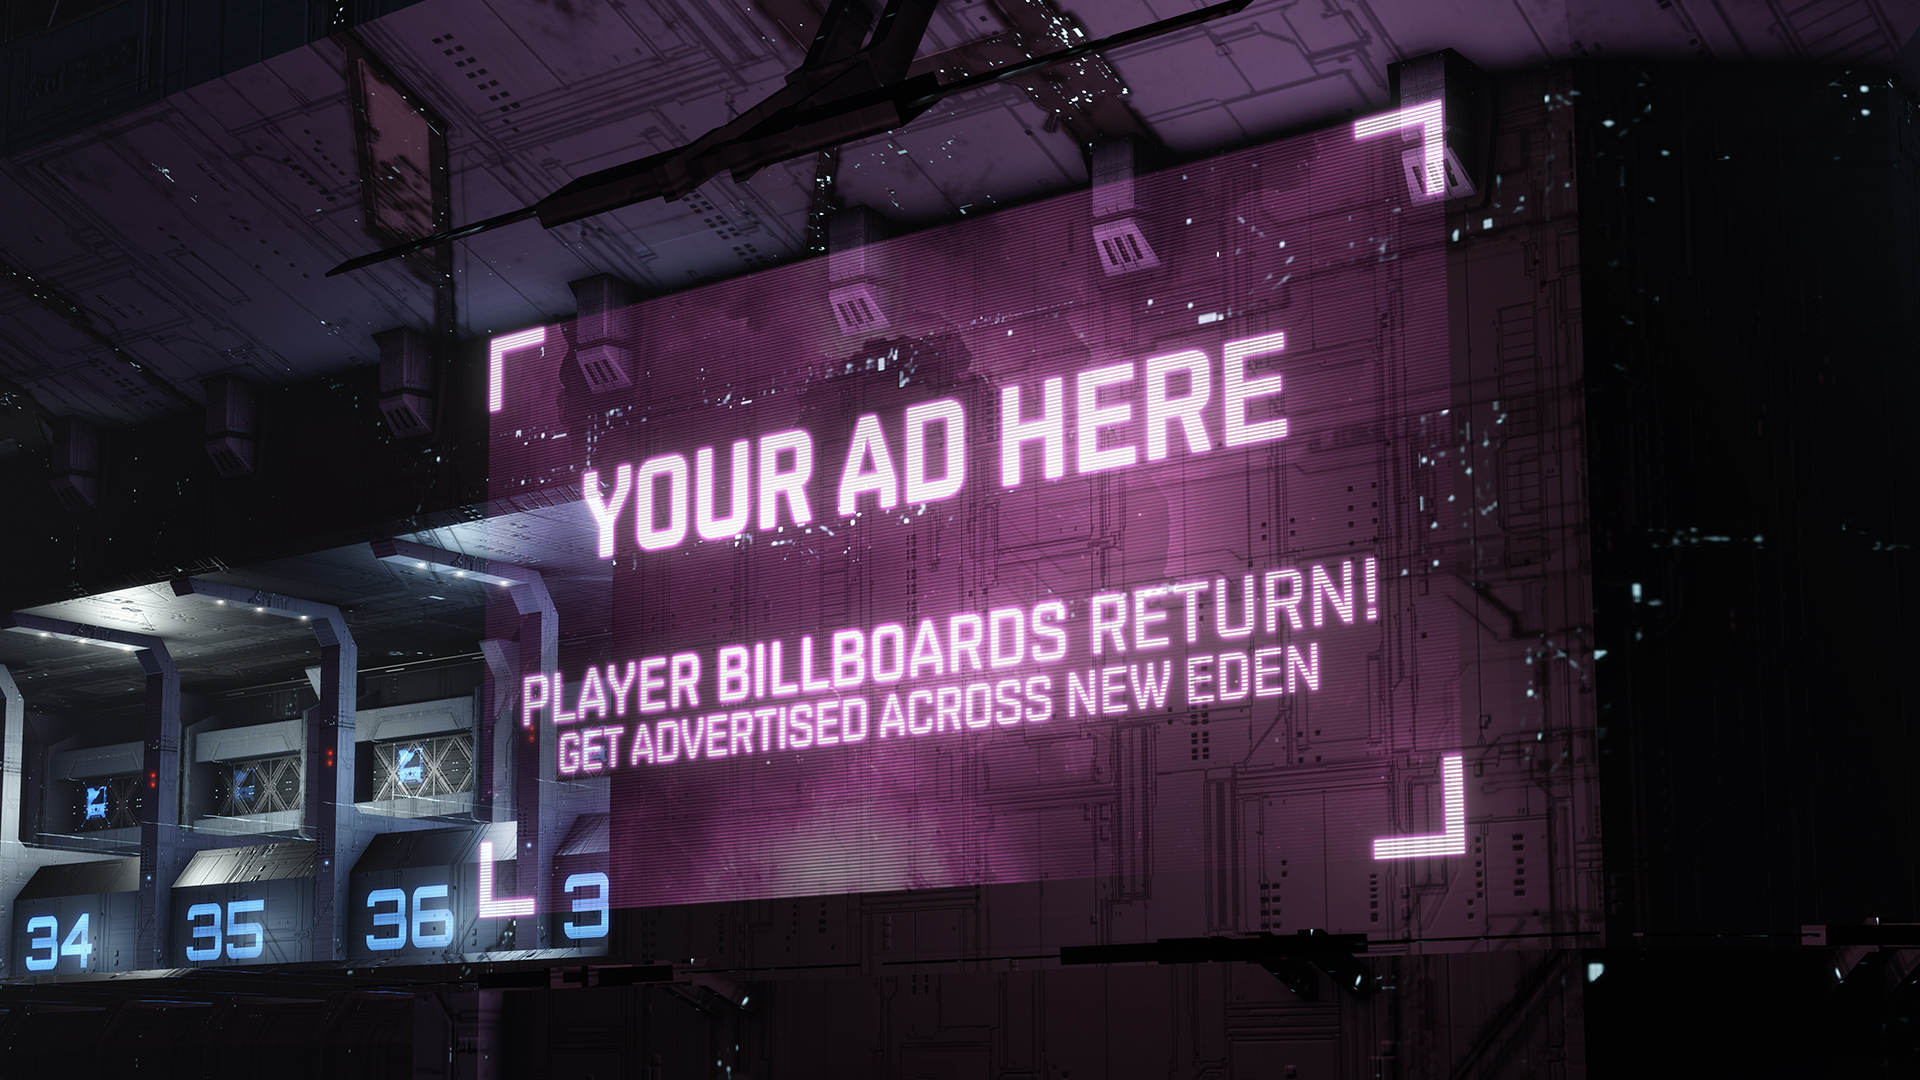 Разработчики EVE Online объявили о возвращении в игру рекламных роликов корпораций, альянсов и прочих связанных с EVE тем от игроков.